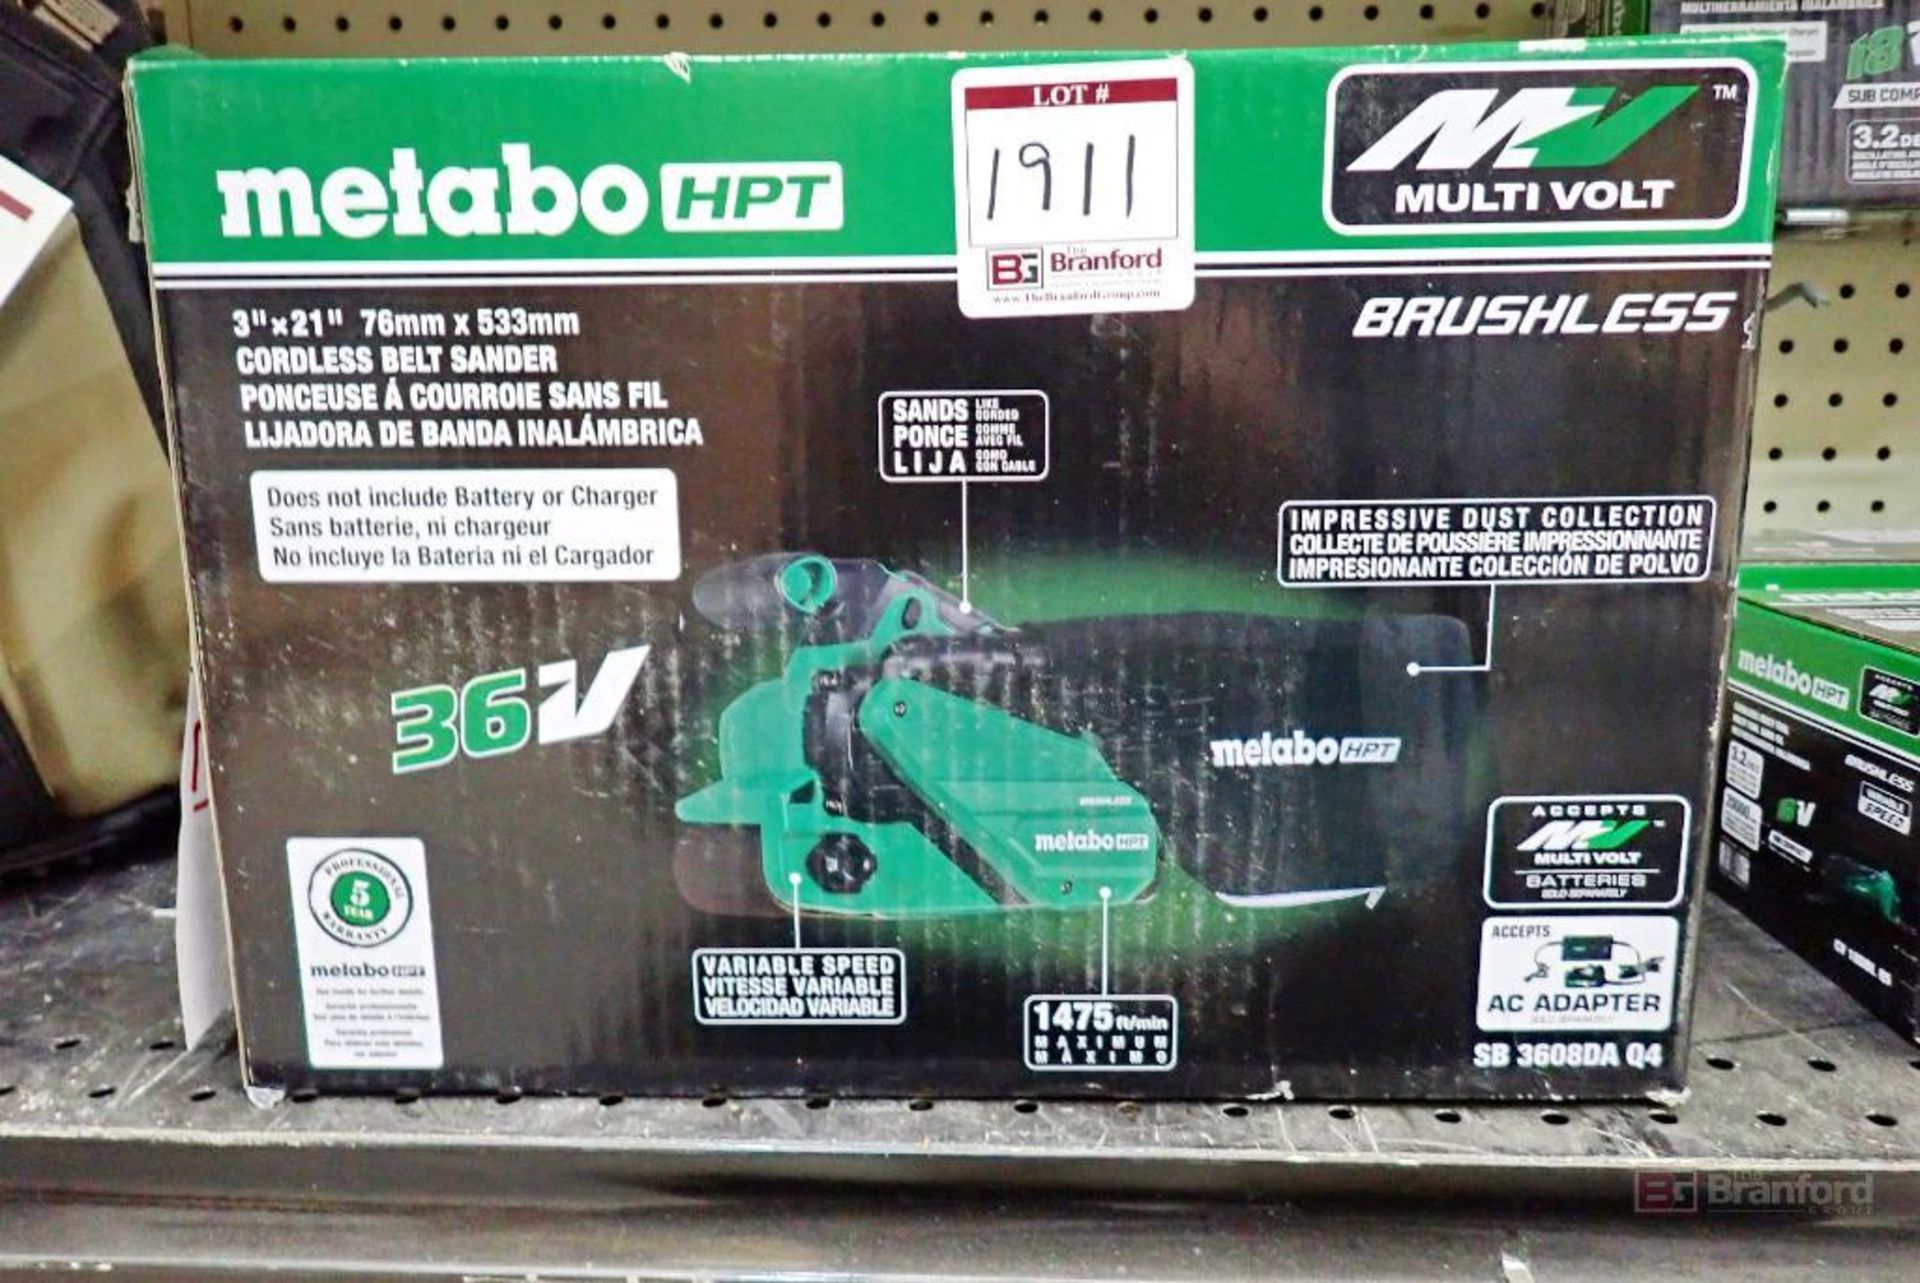 Metabo HPT SB 3608DA Q4 Brushless Cordless Belt Sander